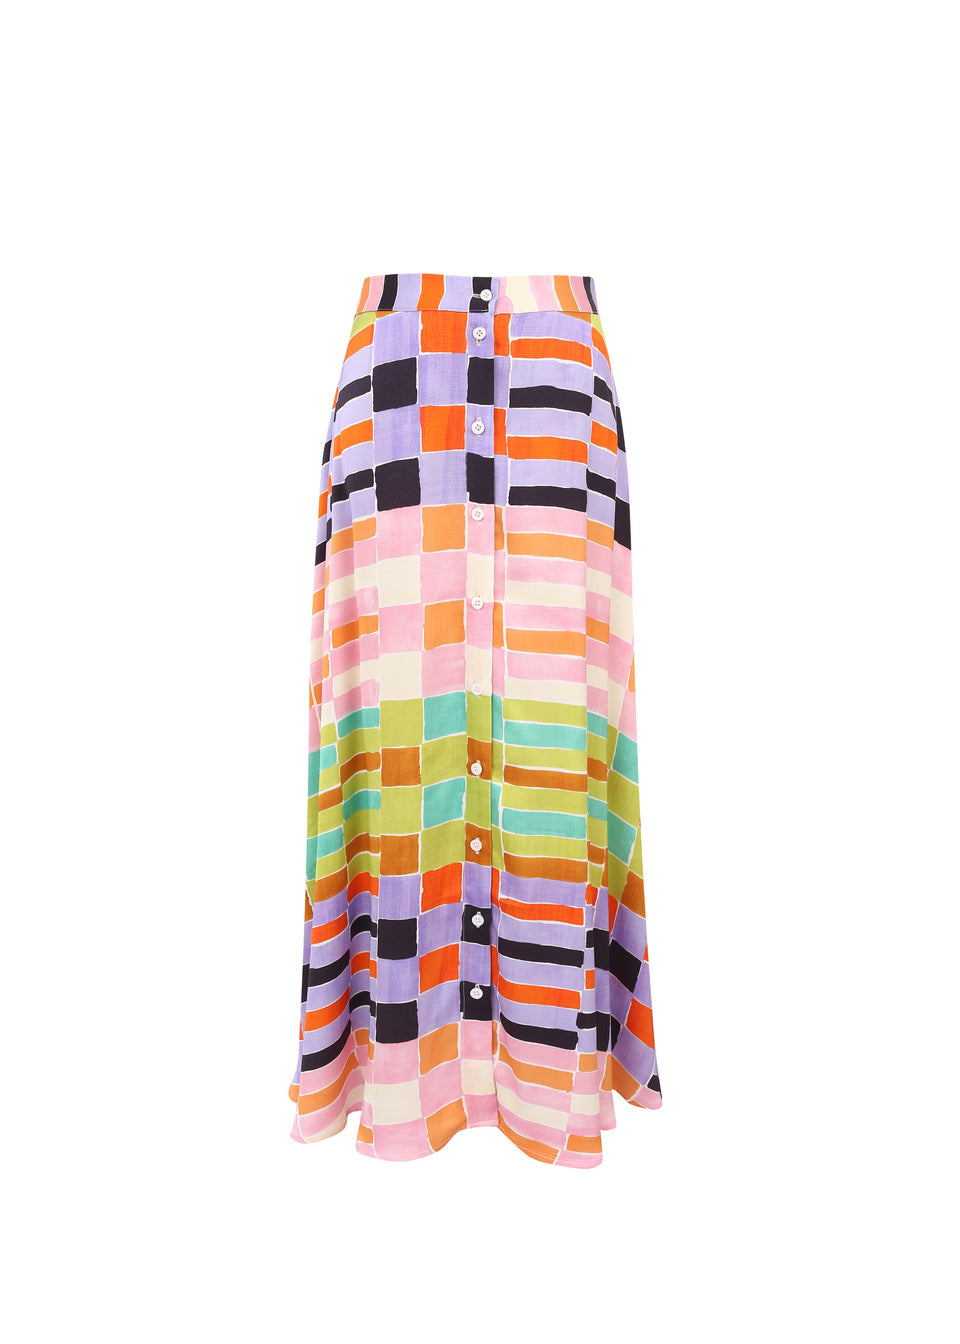 Celly Midi Skirt in Hot Palette